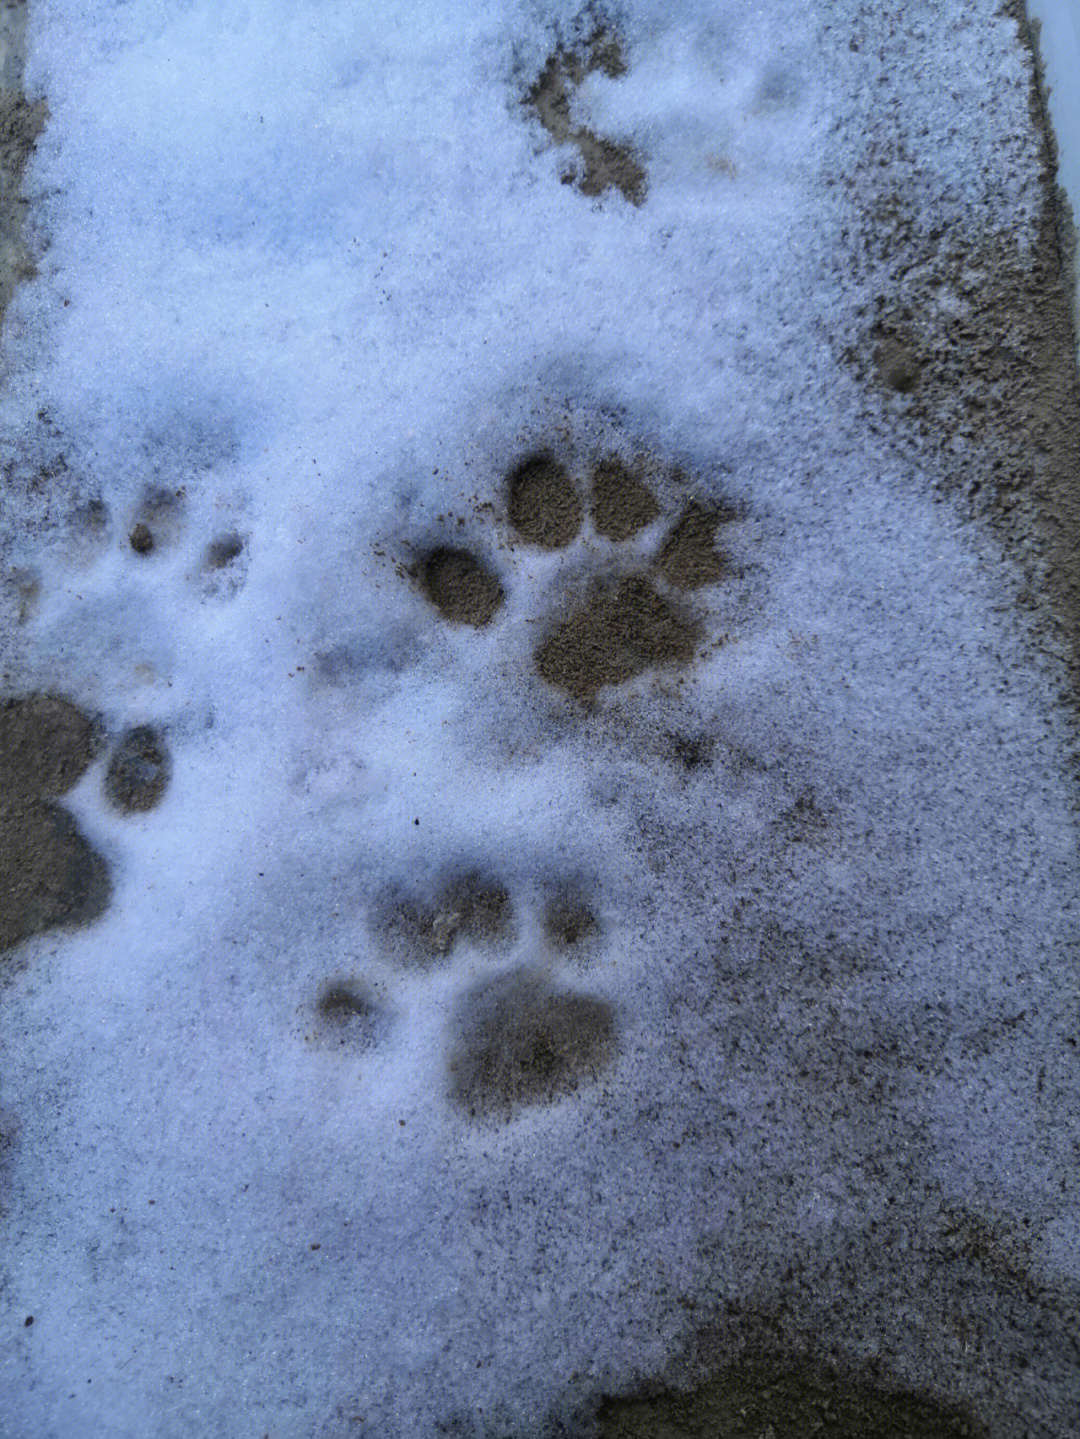 白茫茫的一片,猫子们也去雪地里撒欢了,我就记录下了可爱的小脚印